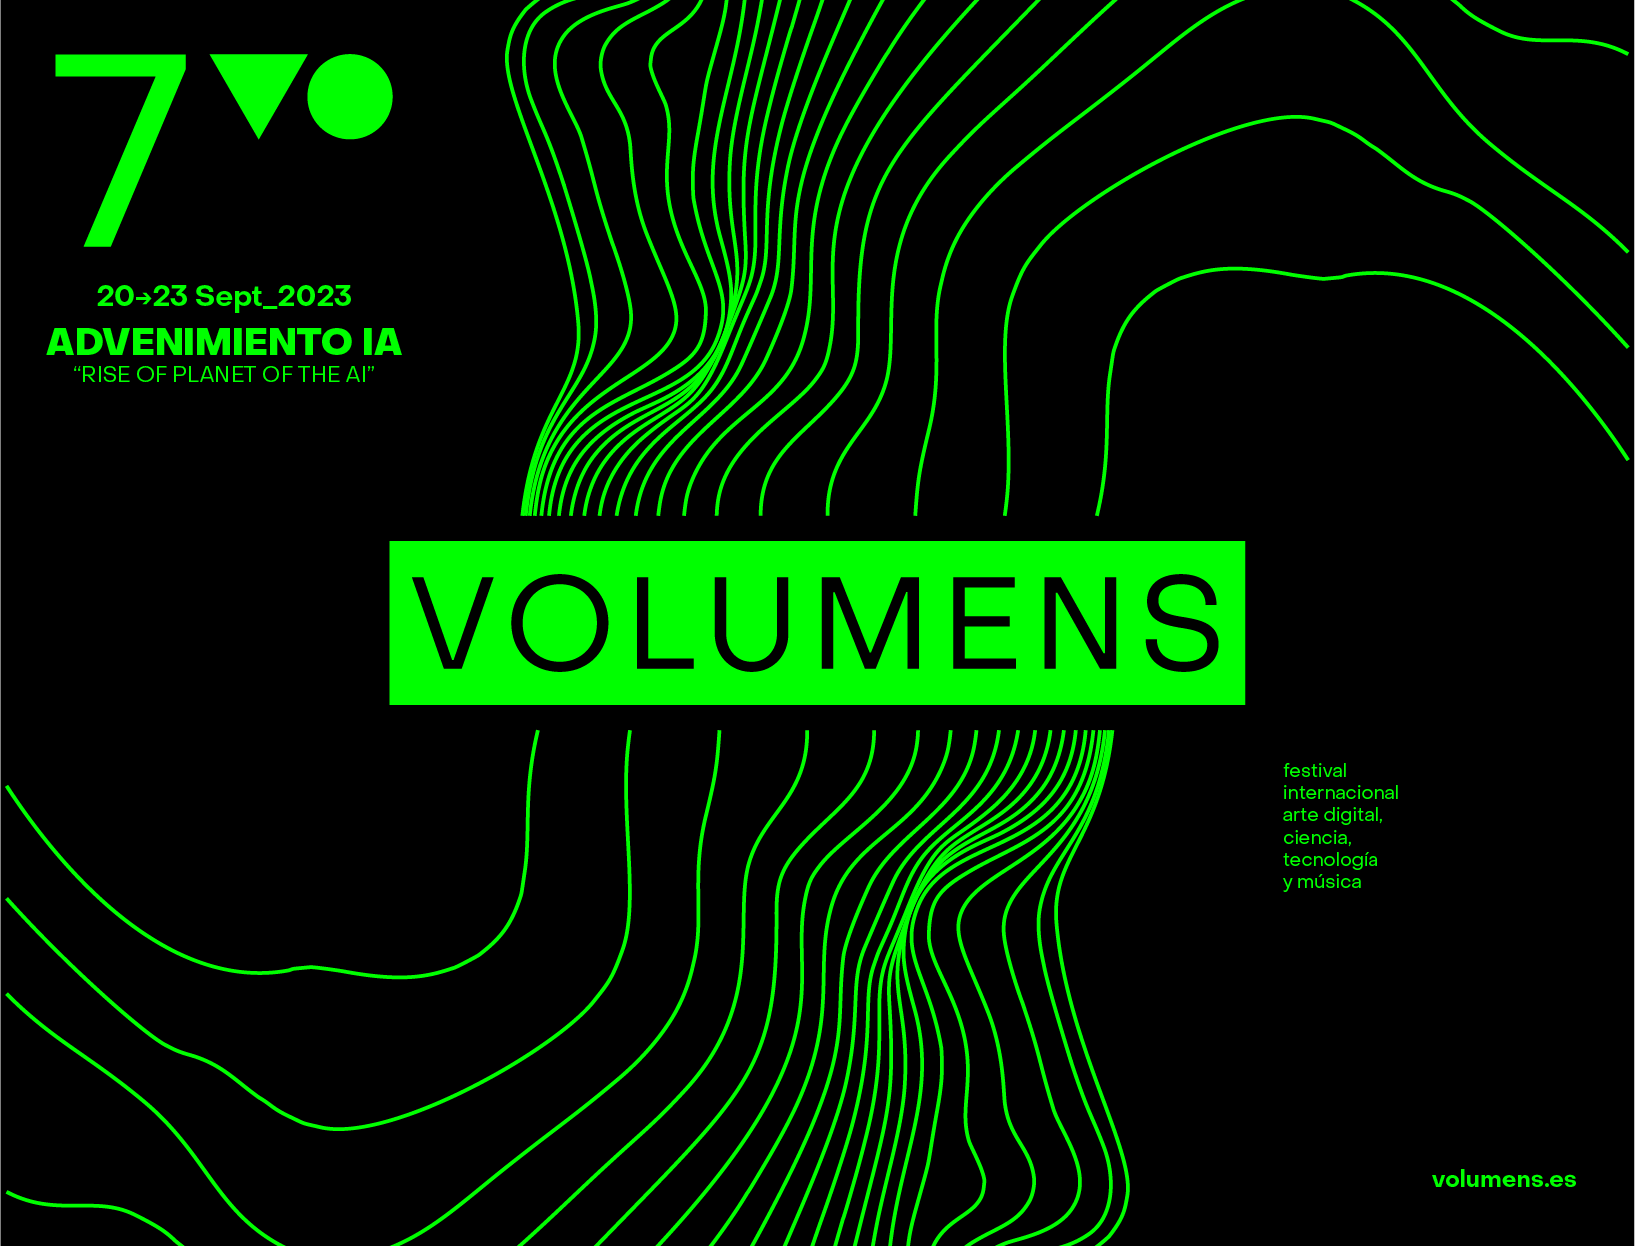 VOlumens anuncia la destacada alineación de artistas para su séptima edición